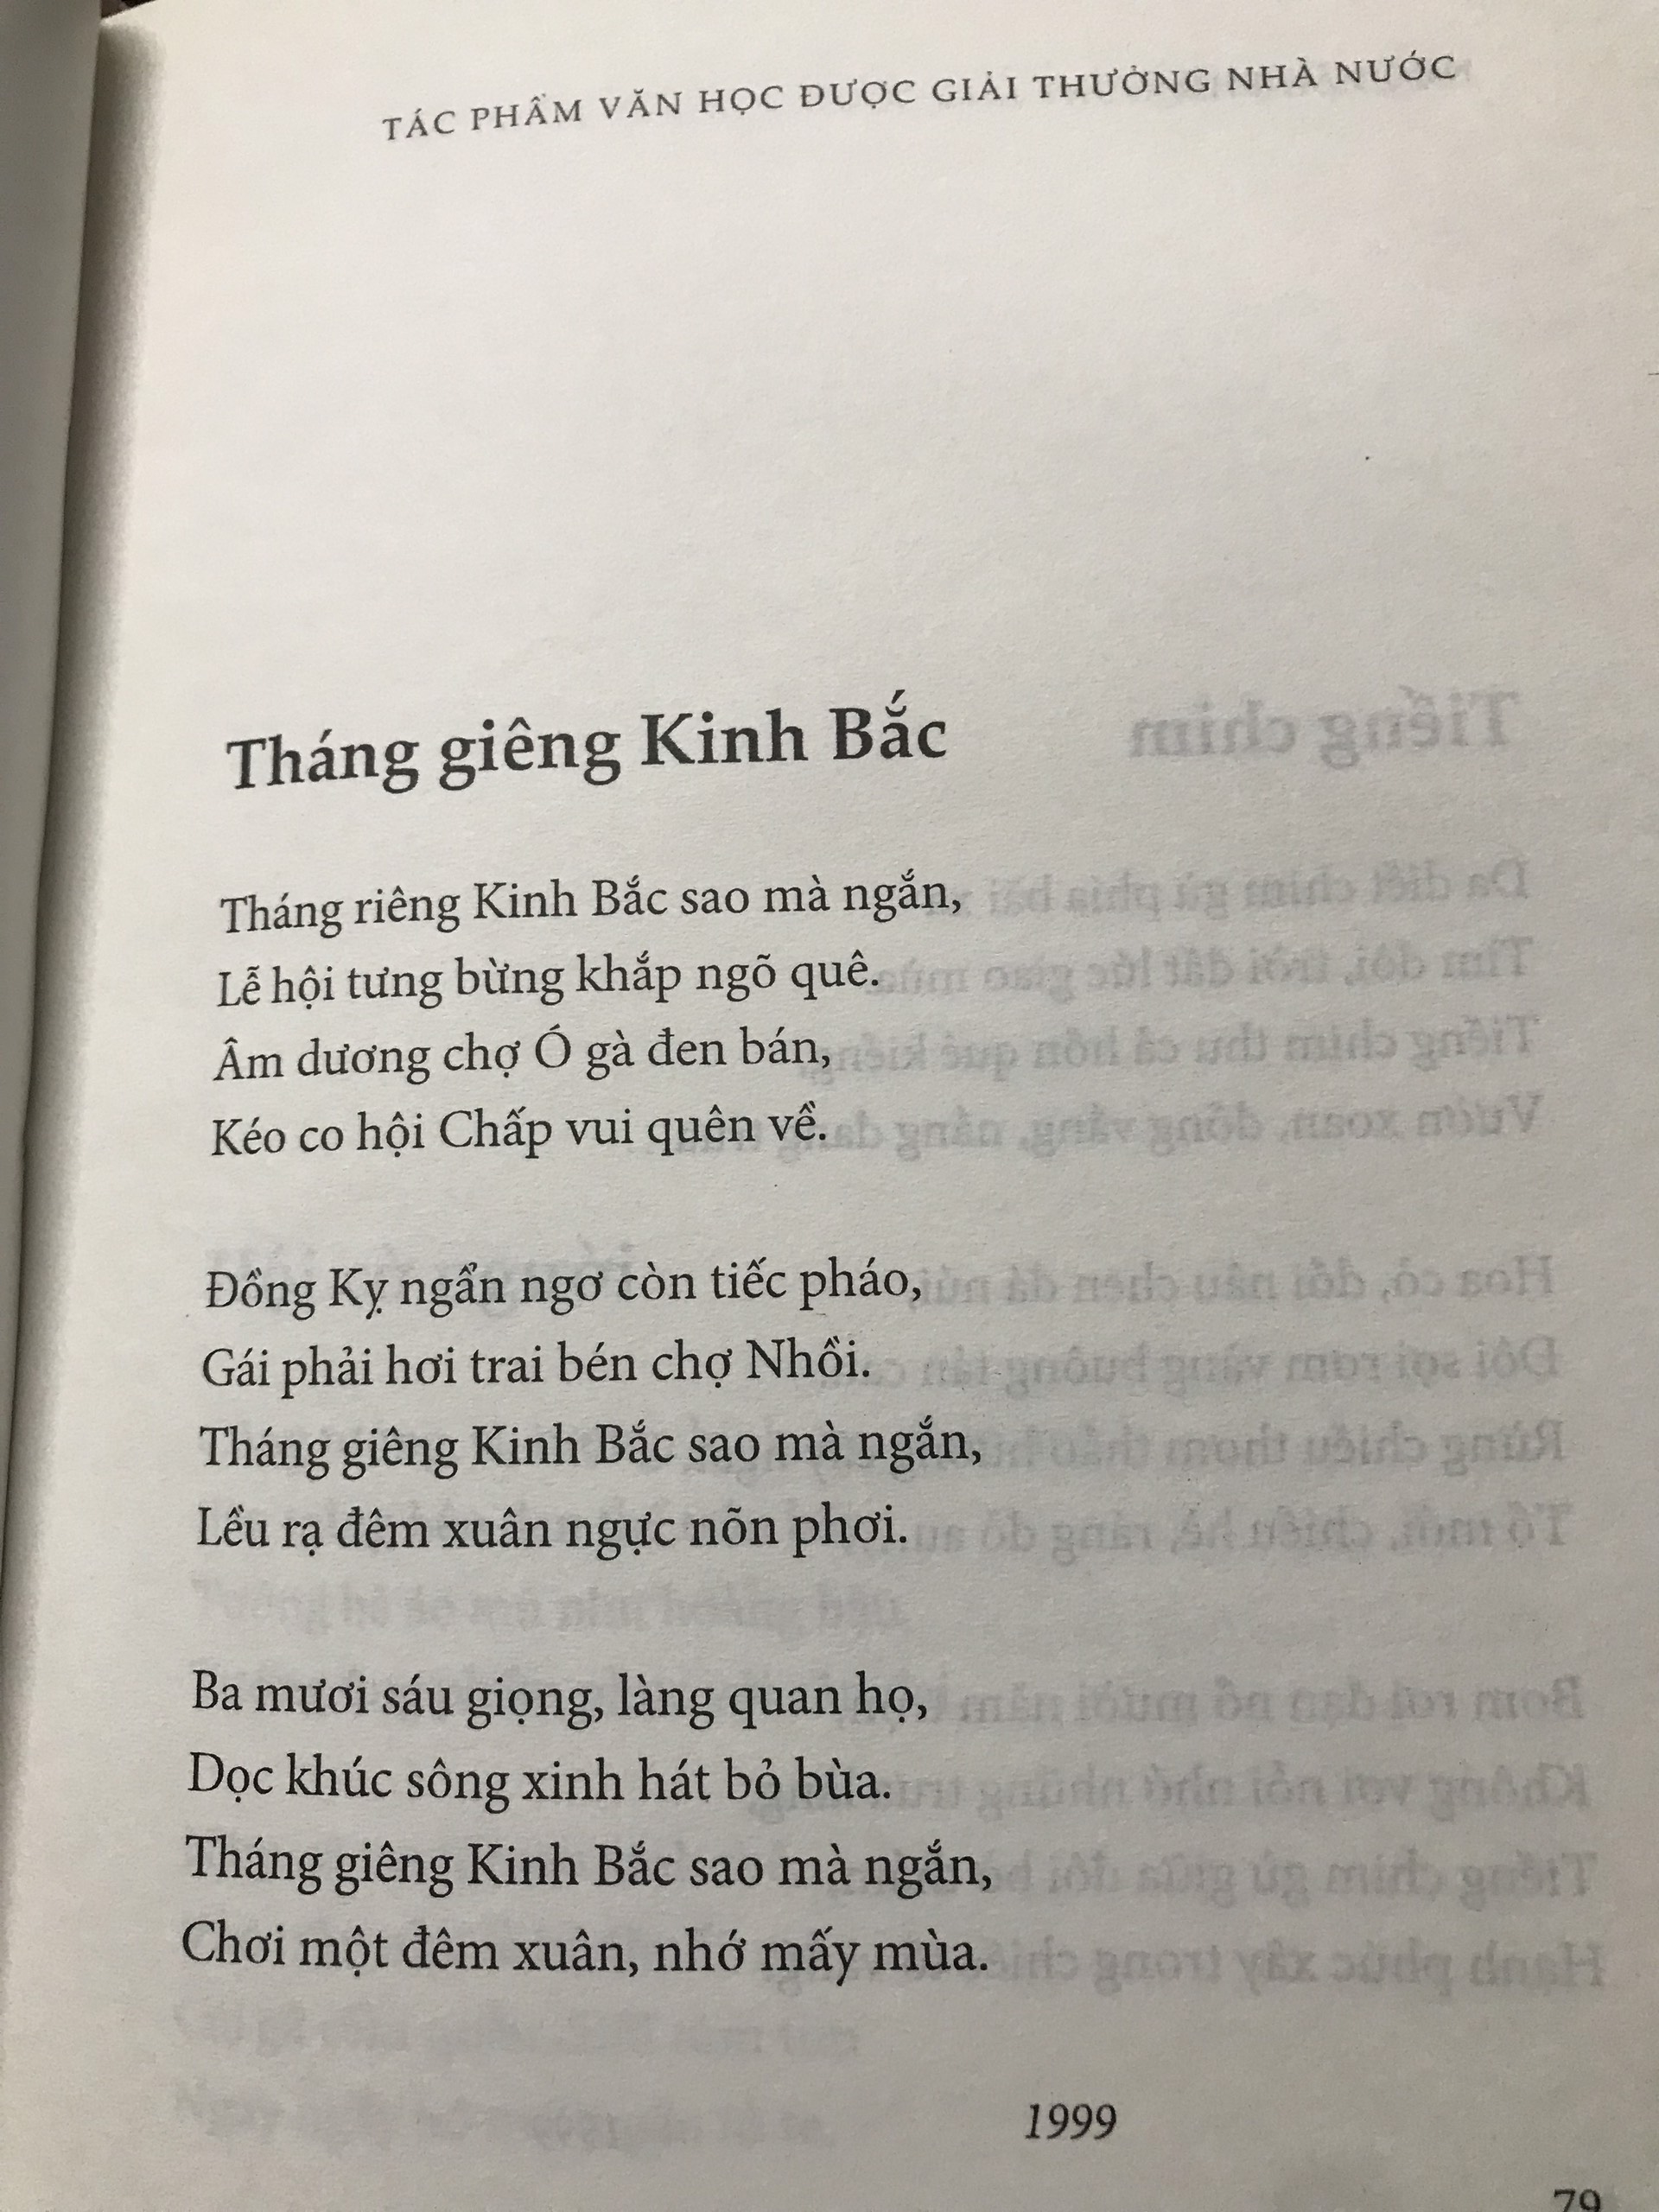 Combo thơ Ngô Văn Phú (Vầng trăng dấu hỏi - Phương gió nổi) + thơ Trần Lê Khánh ( Xứ rung một ngọn mây) sách bìa cứng